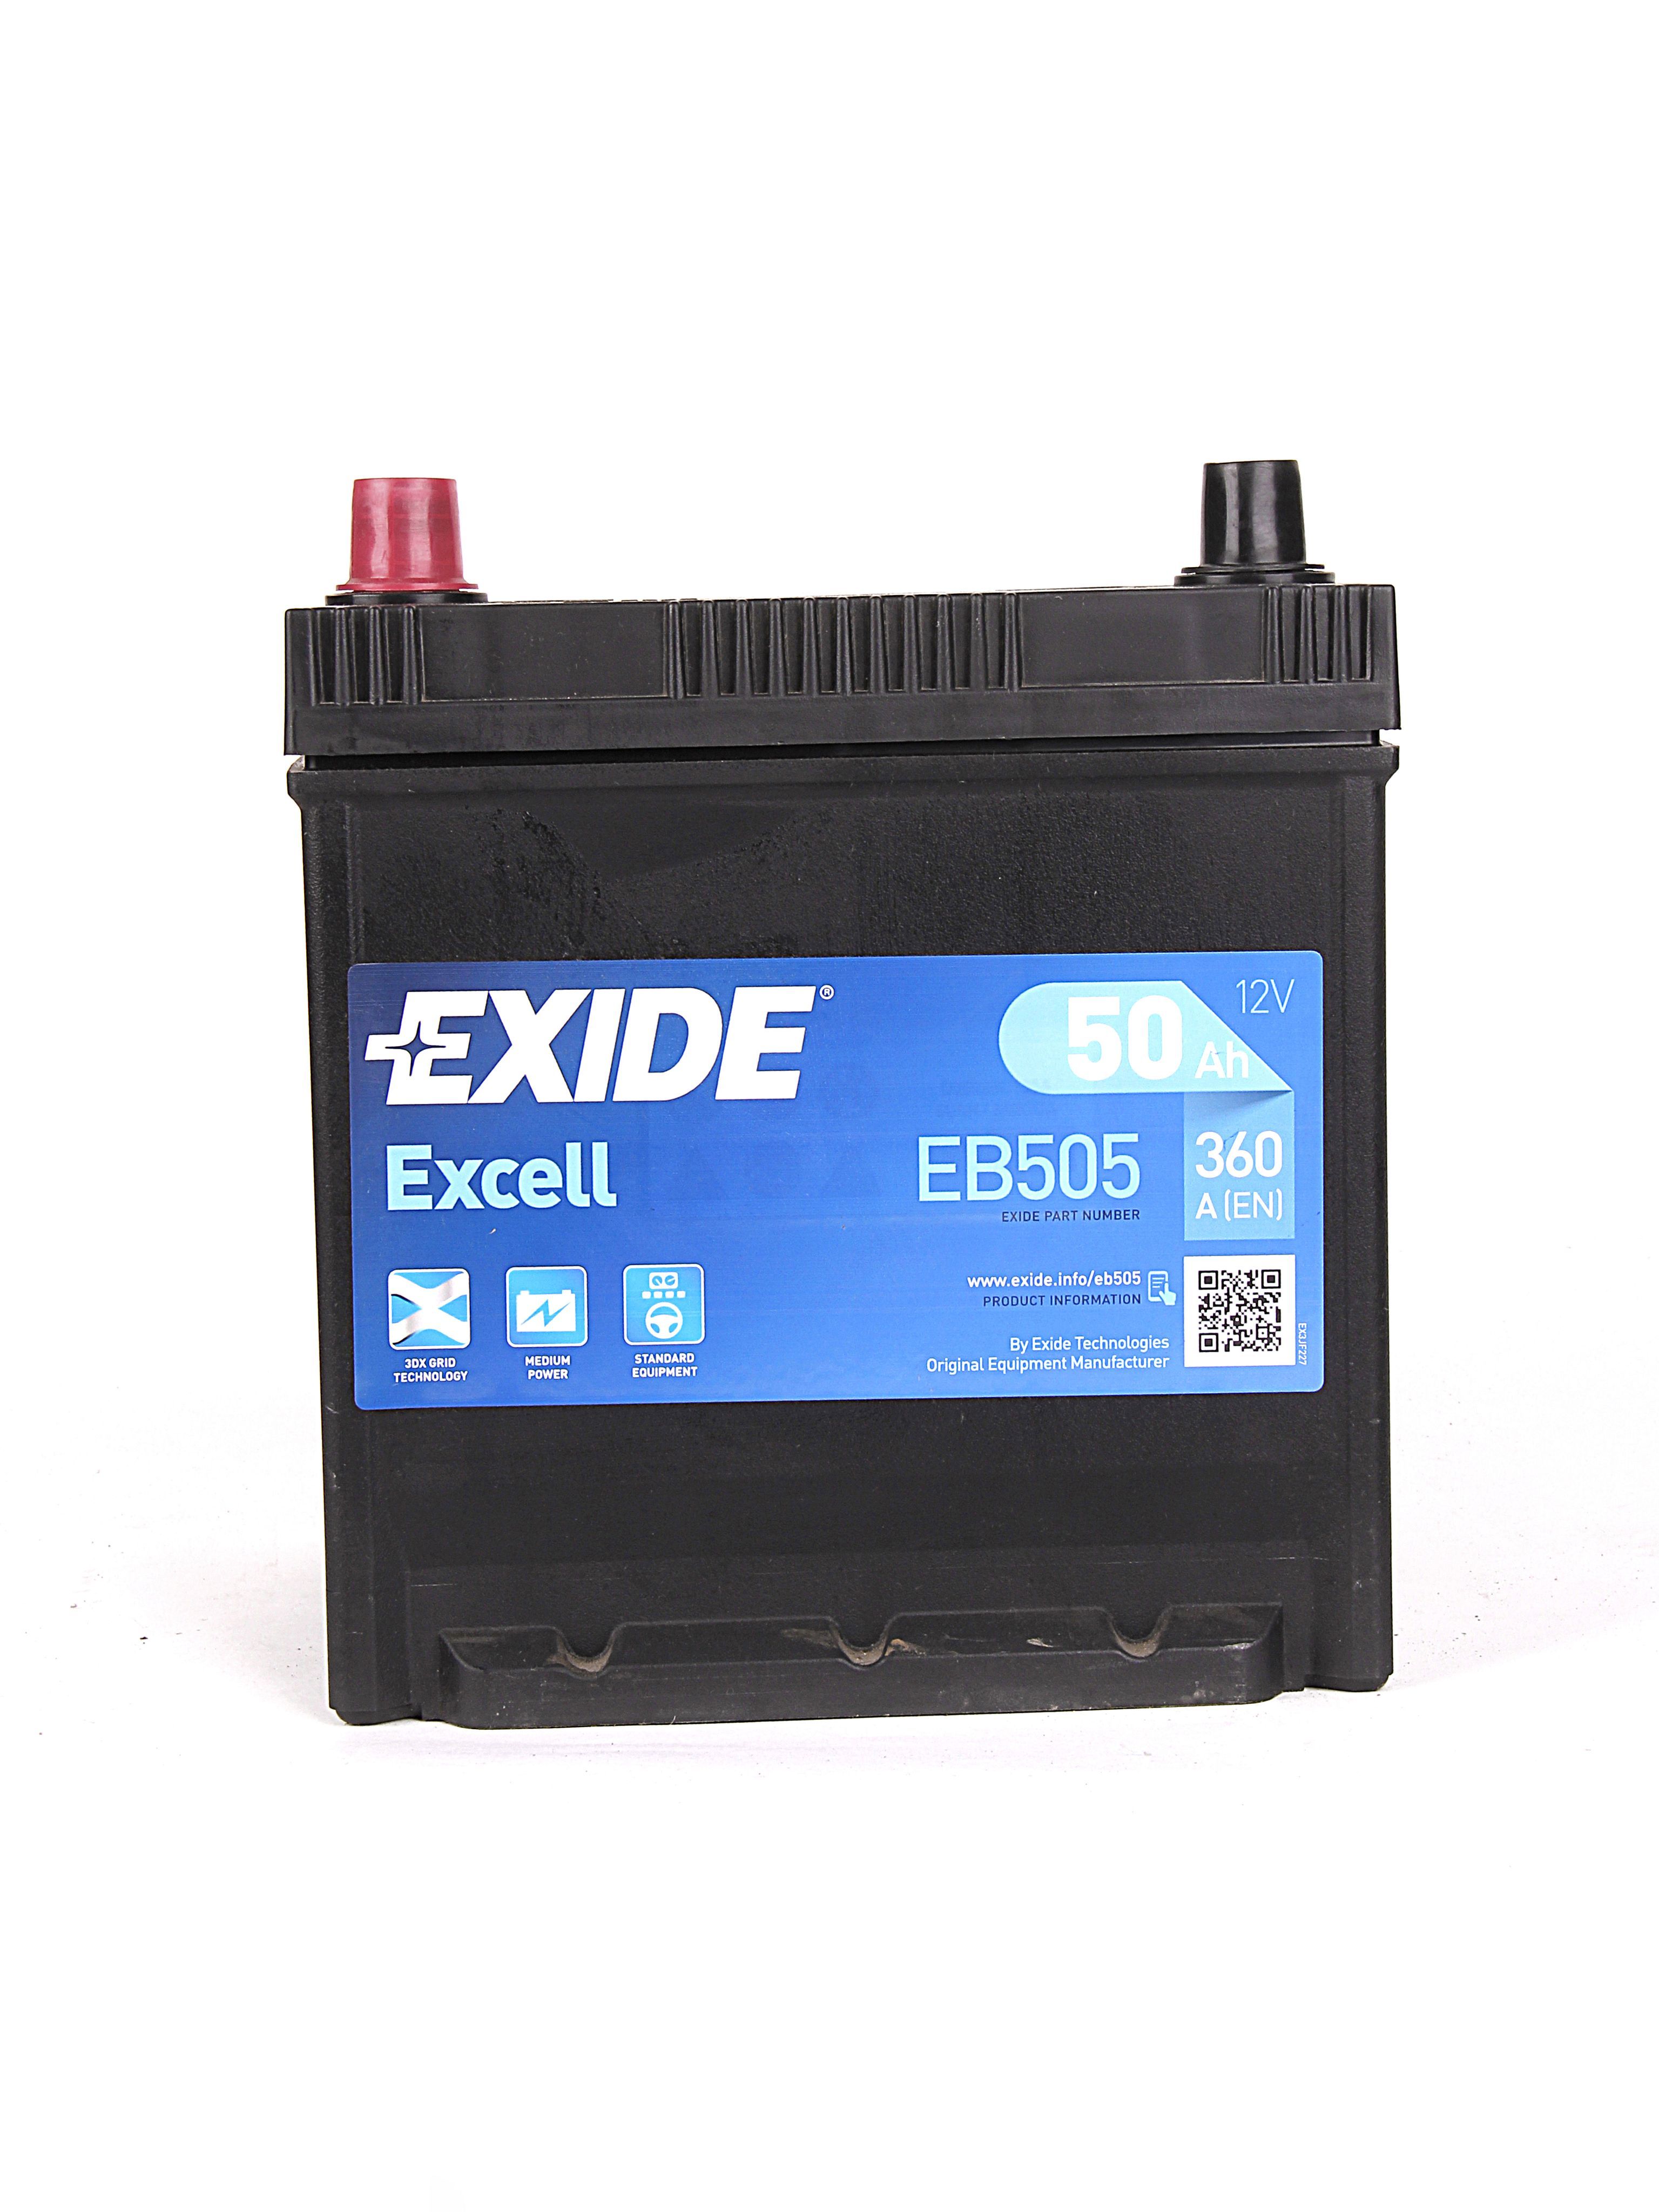 EXIDE Batterie Exide EB950 12v 95AH 800A FB950 pas cher 